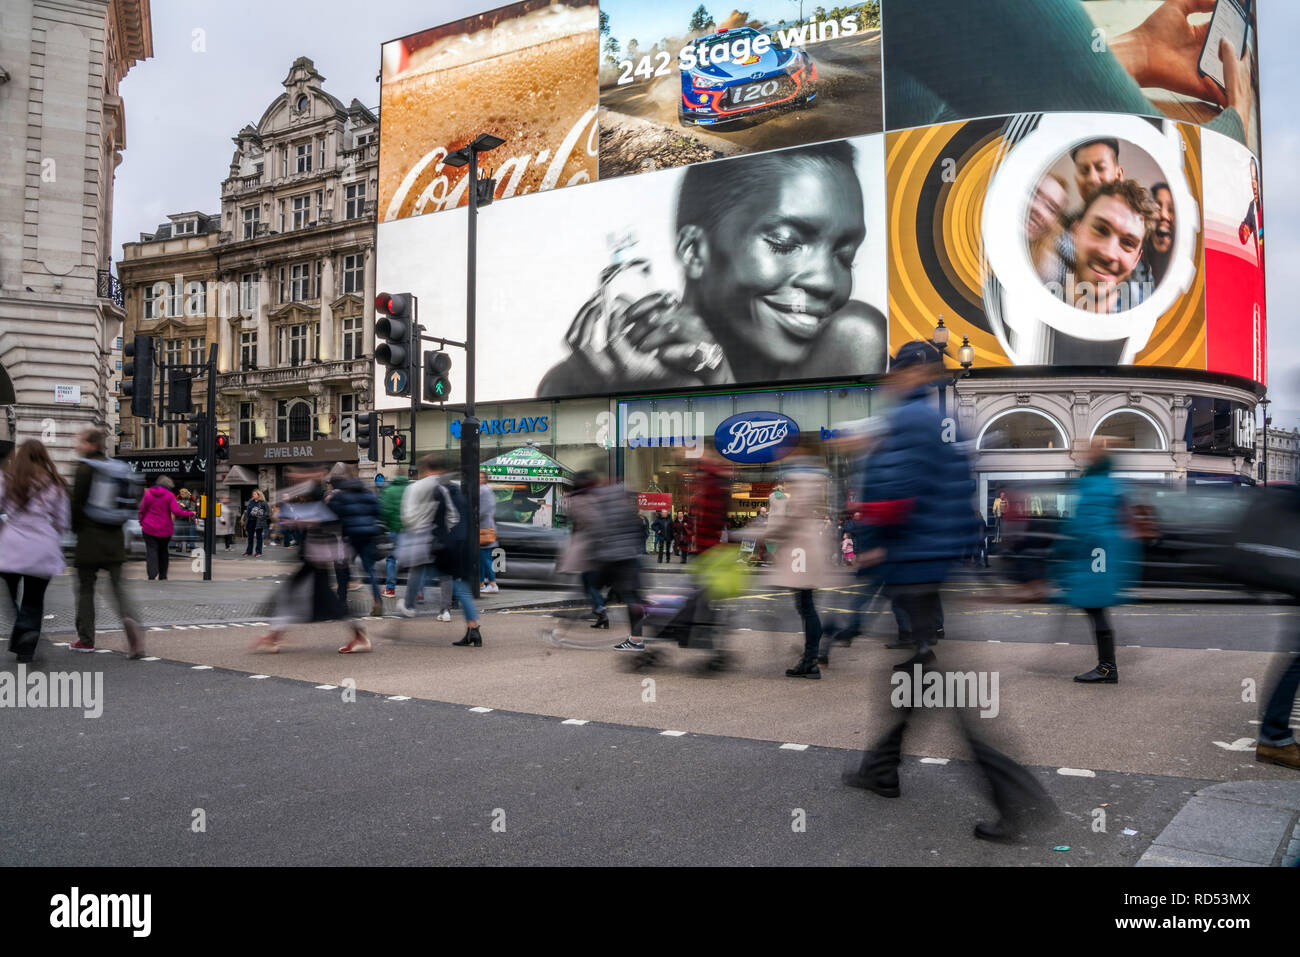 Fussgänger am Piccadilly Circus, London, Vereinigtes Königreich Großbritannien, Europa |  pedestrian crossing, Piccadilly Circus, London, United Kingd Stock Photo